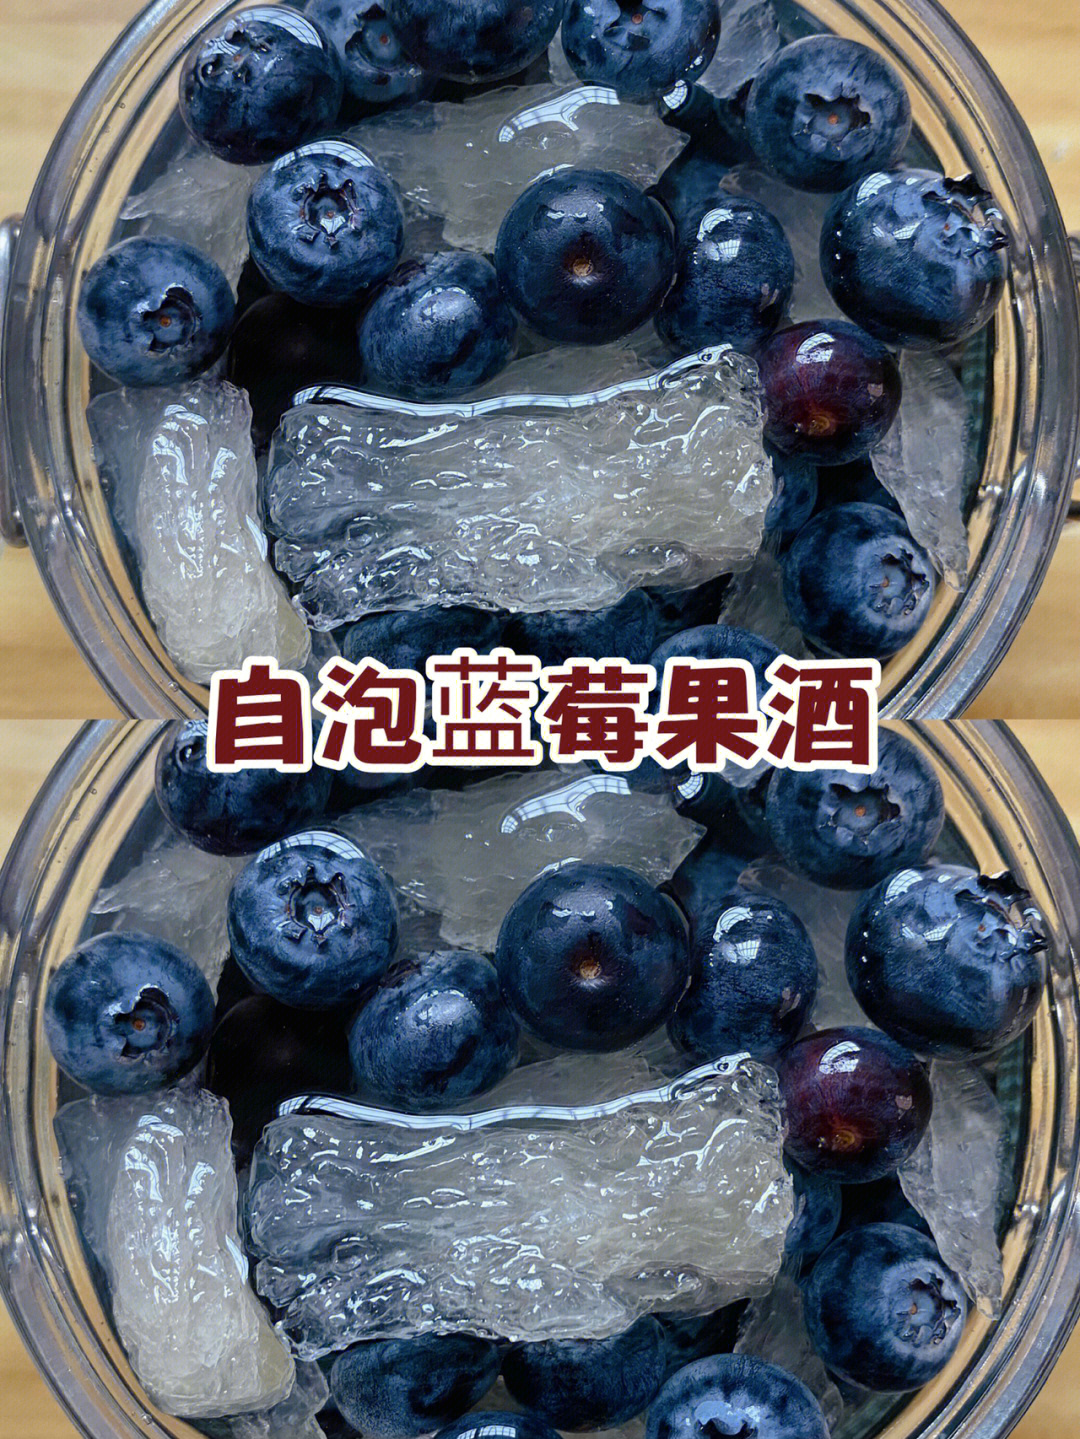 【自泡蓝莓果酒】73食材:蓝莓800克,冰糖300克,粮食酒500毫升,密封